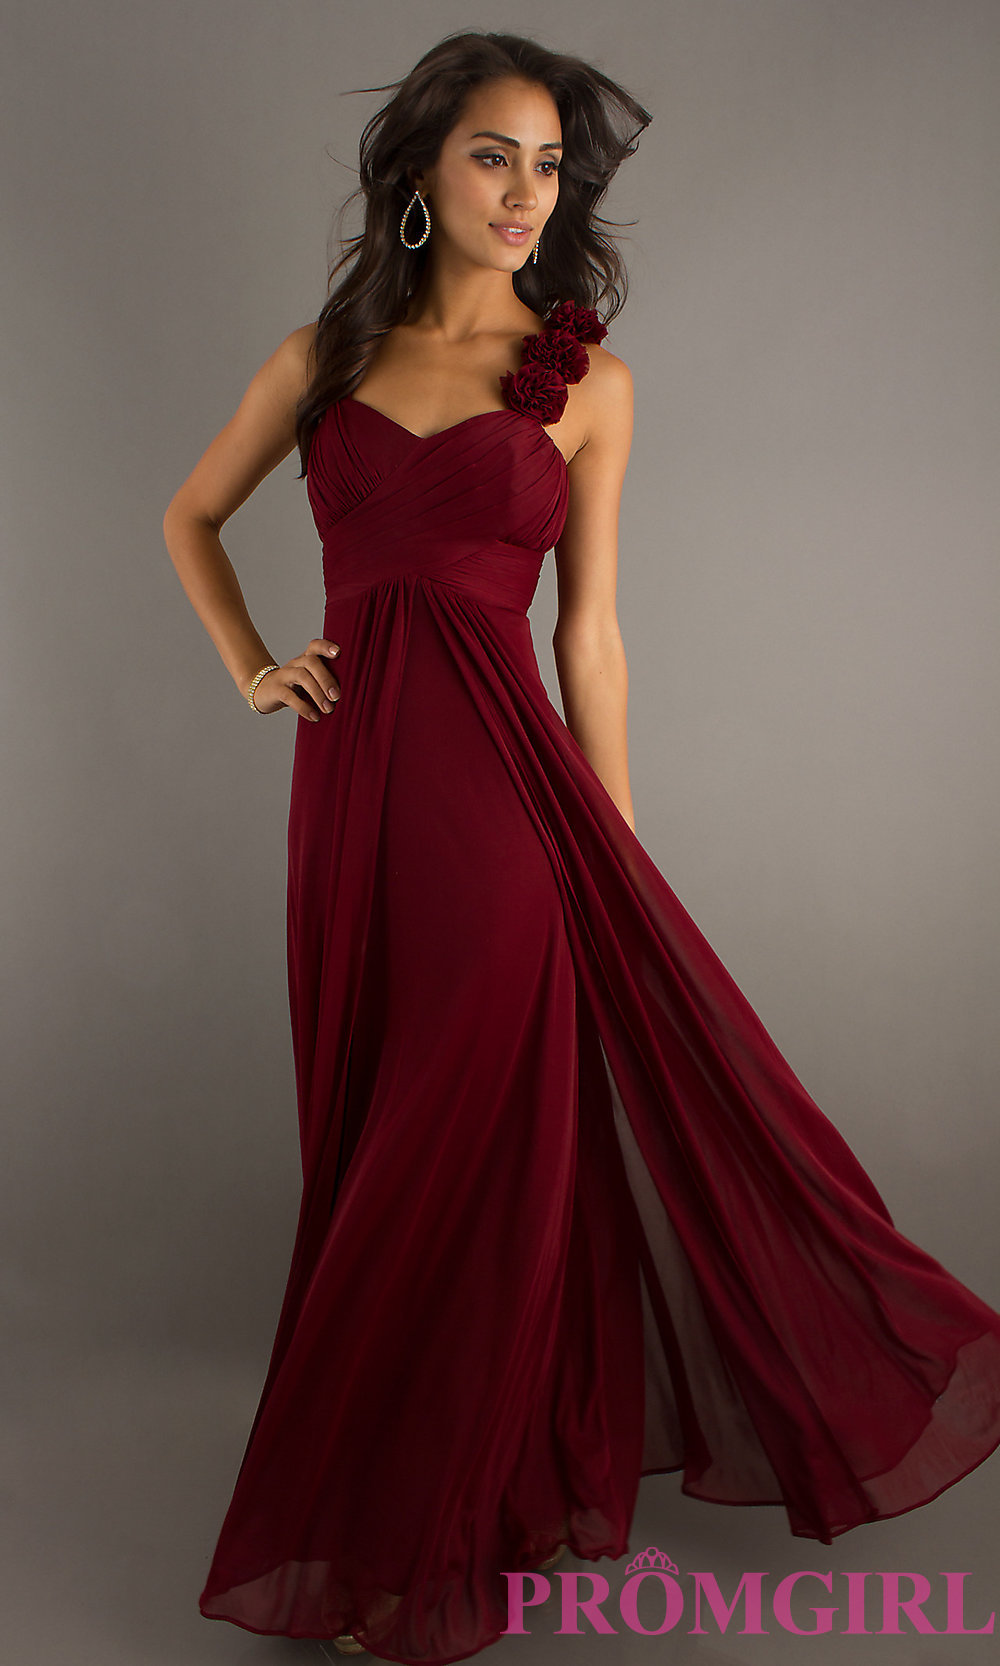 Long Dress Length - Elegant And Beautiful